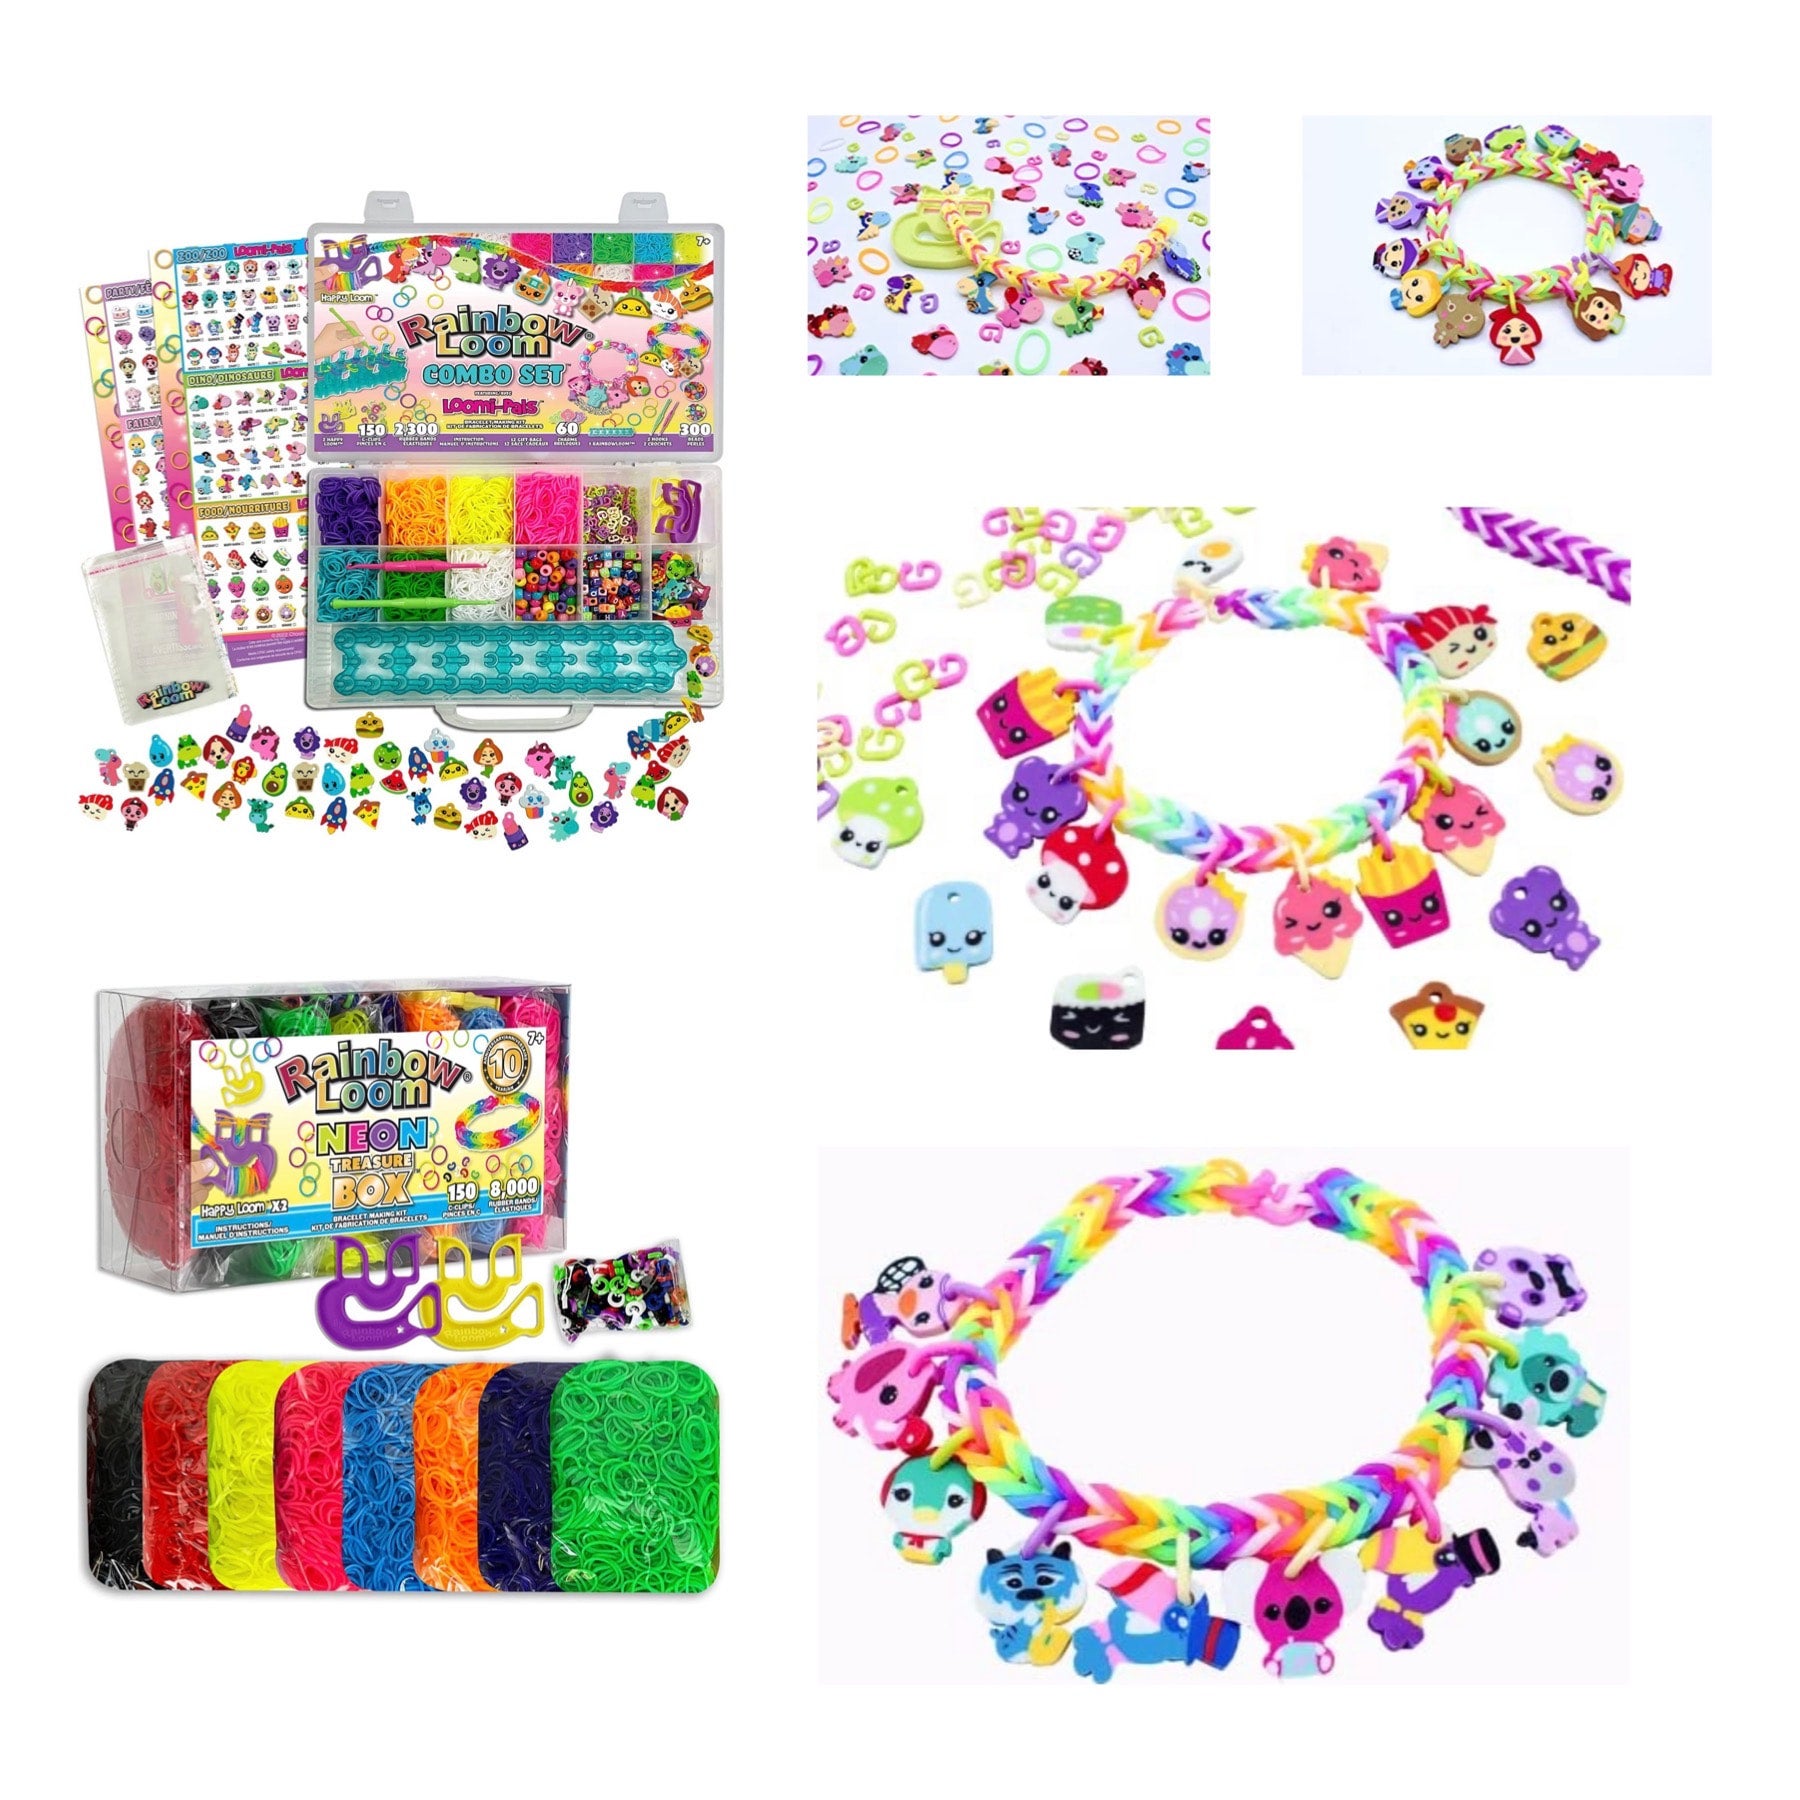 Rainbow Loom Neon Treasure Box Bracelet Making Kit | Michaels